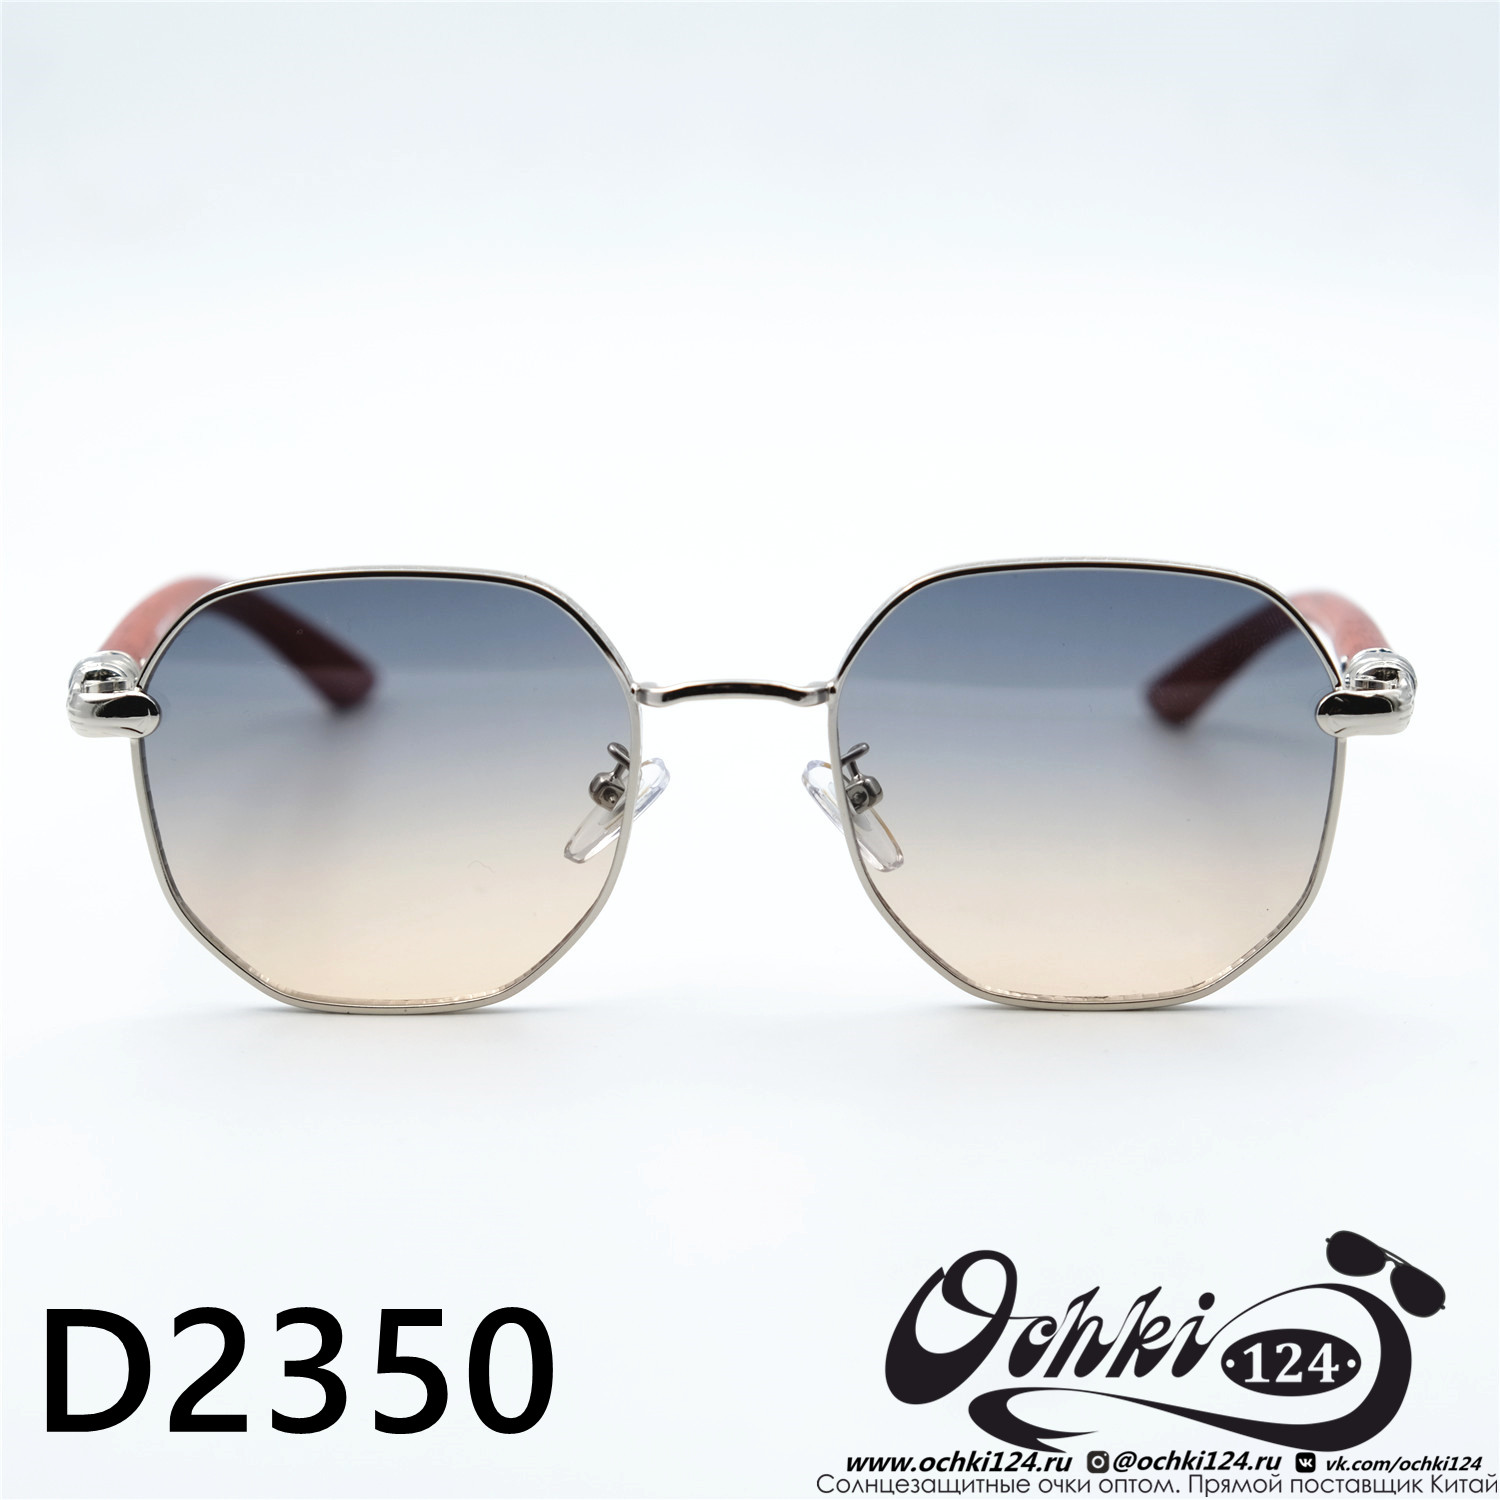  Солнцезащитные очки картинка Женские Yamanni  Геометрические формы D2350-C8-78 